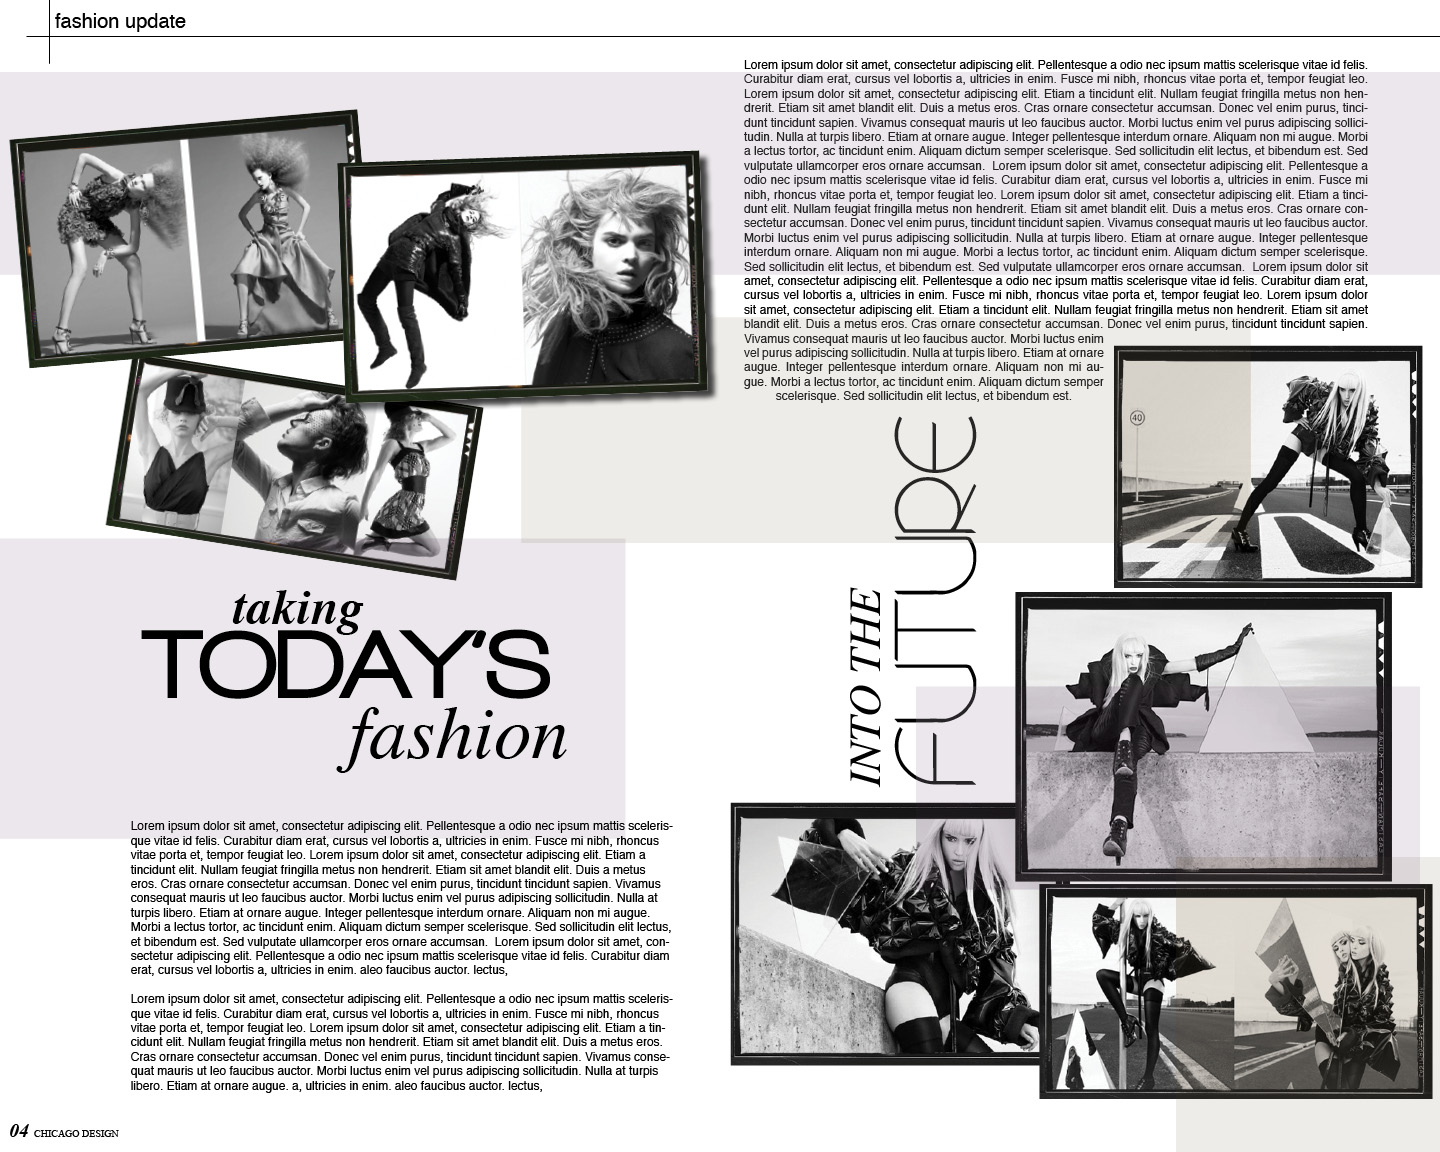 15 Magazine Layout Design Images Fashion Magazine Layout Design Good